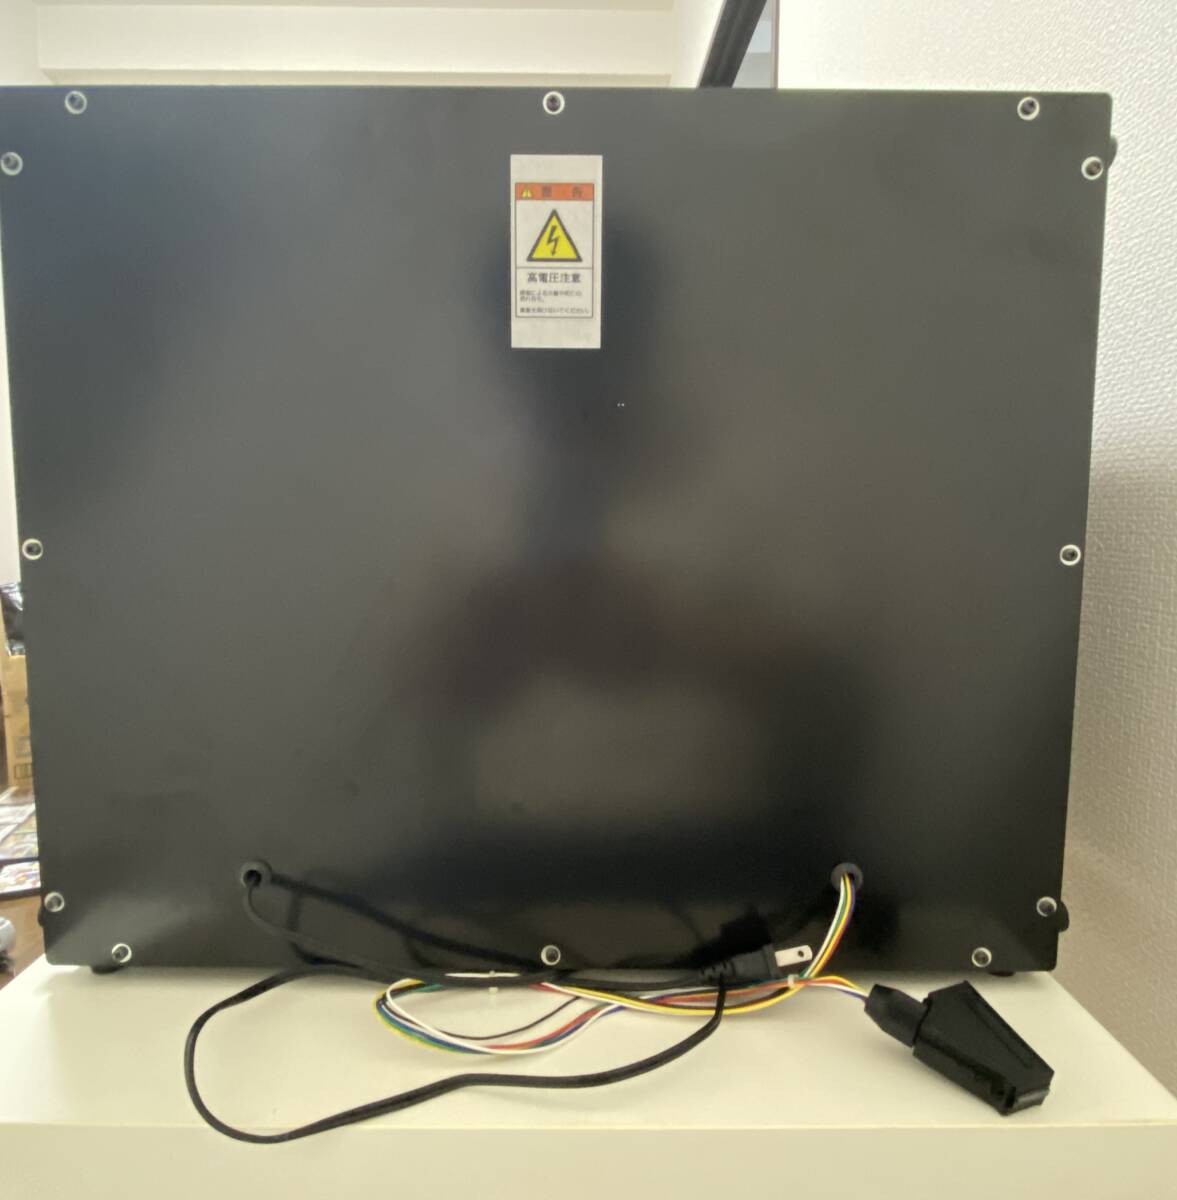 TOEI 20 дюймовый для бизнеса RGB монитор аркадные игры & персональный компьютер магазин выставить TC-HV201LRSO(B) CRT